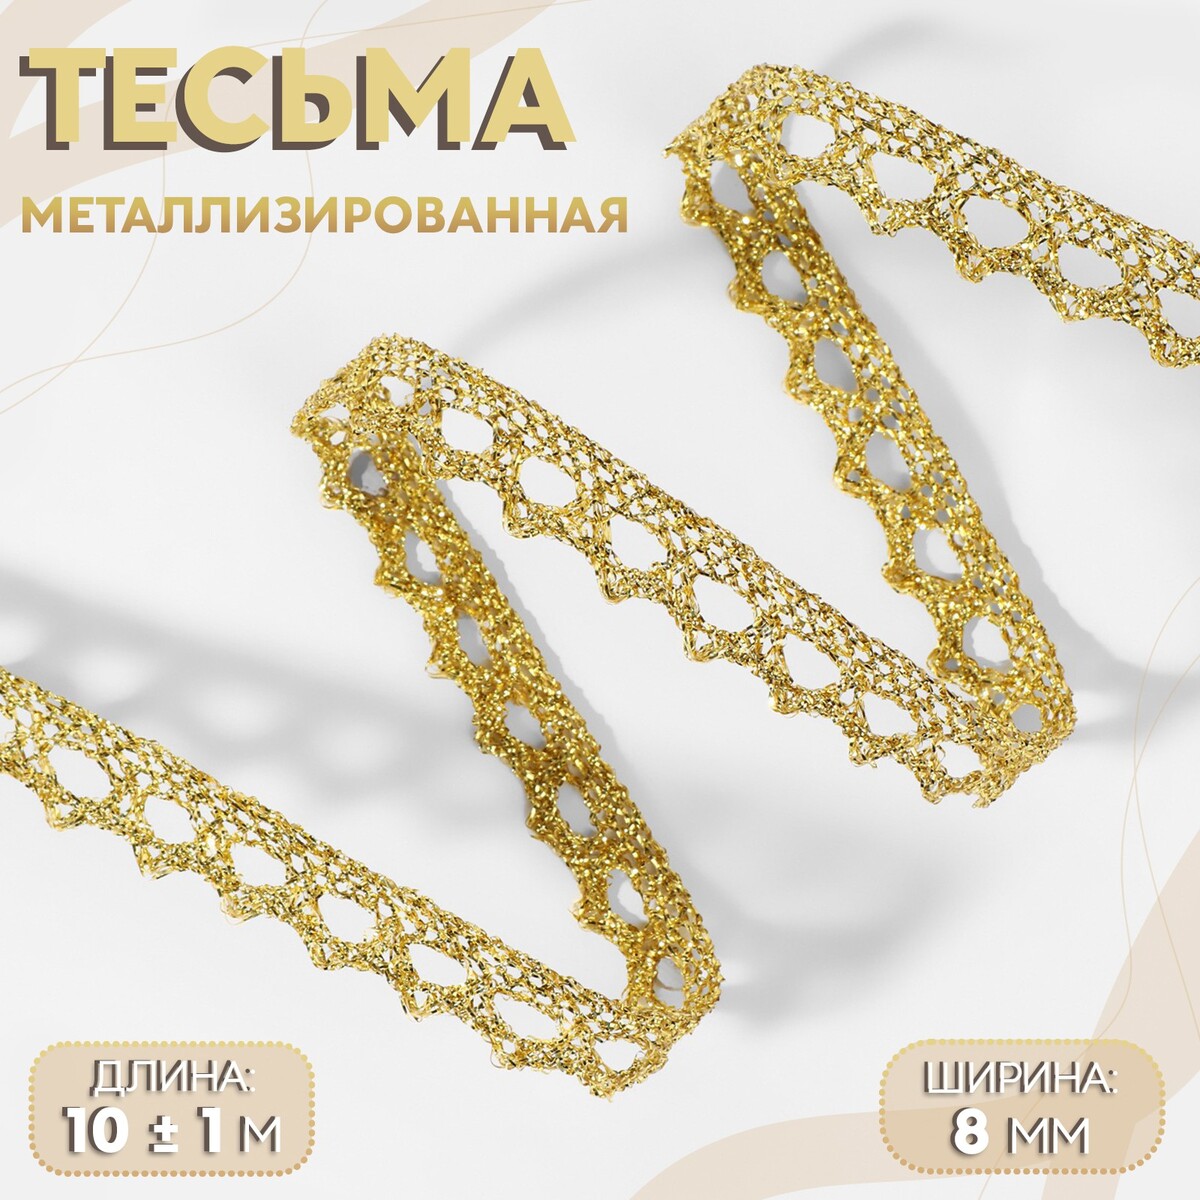 Тесьма декоративная, металлизированная, 10 ± 1 м, 8 мм, цвет золотой тесьма декоративная металлизированная 10 ± 1 м 8 мм золотой